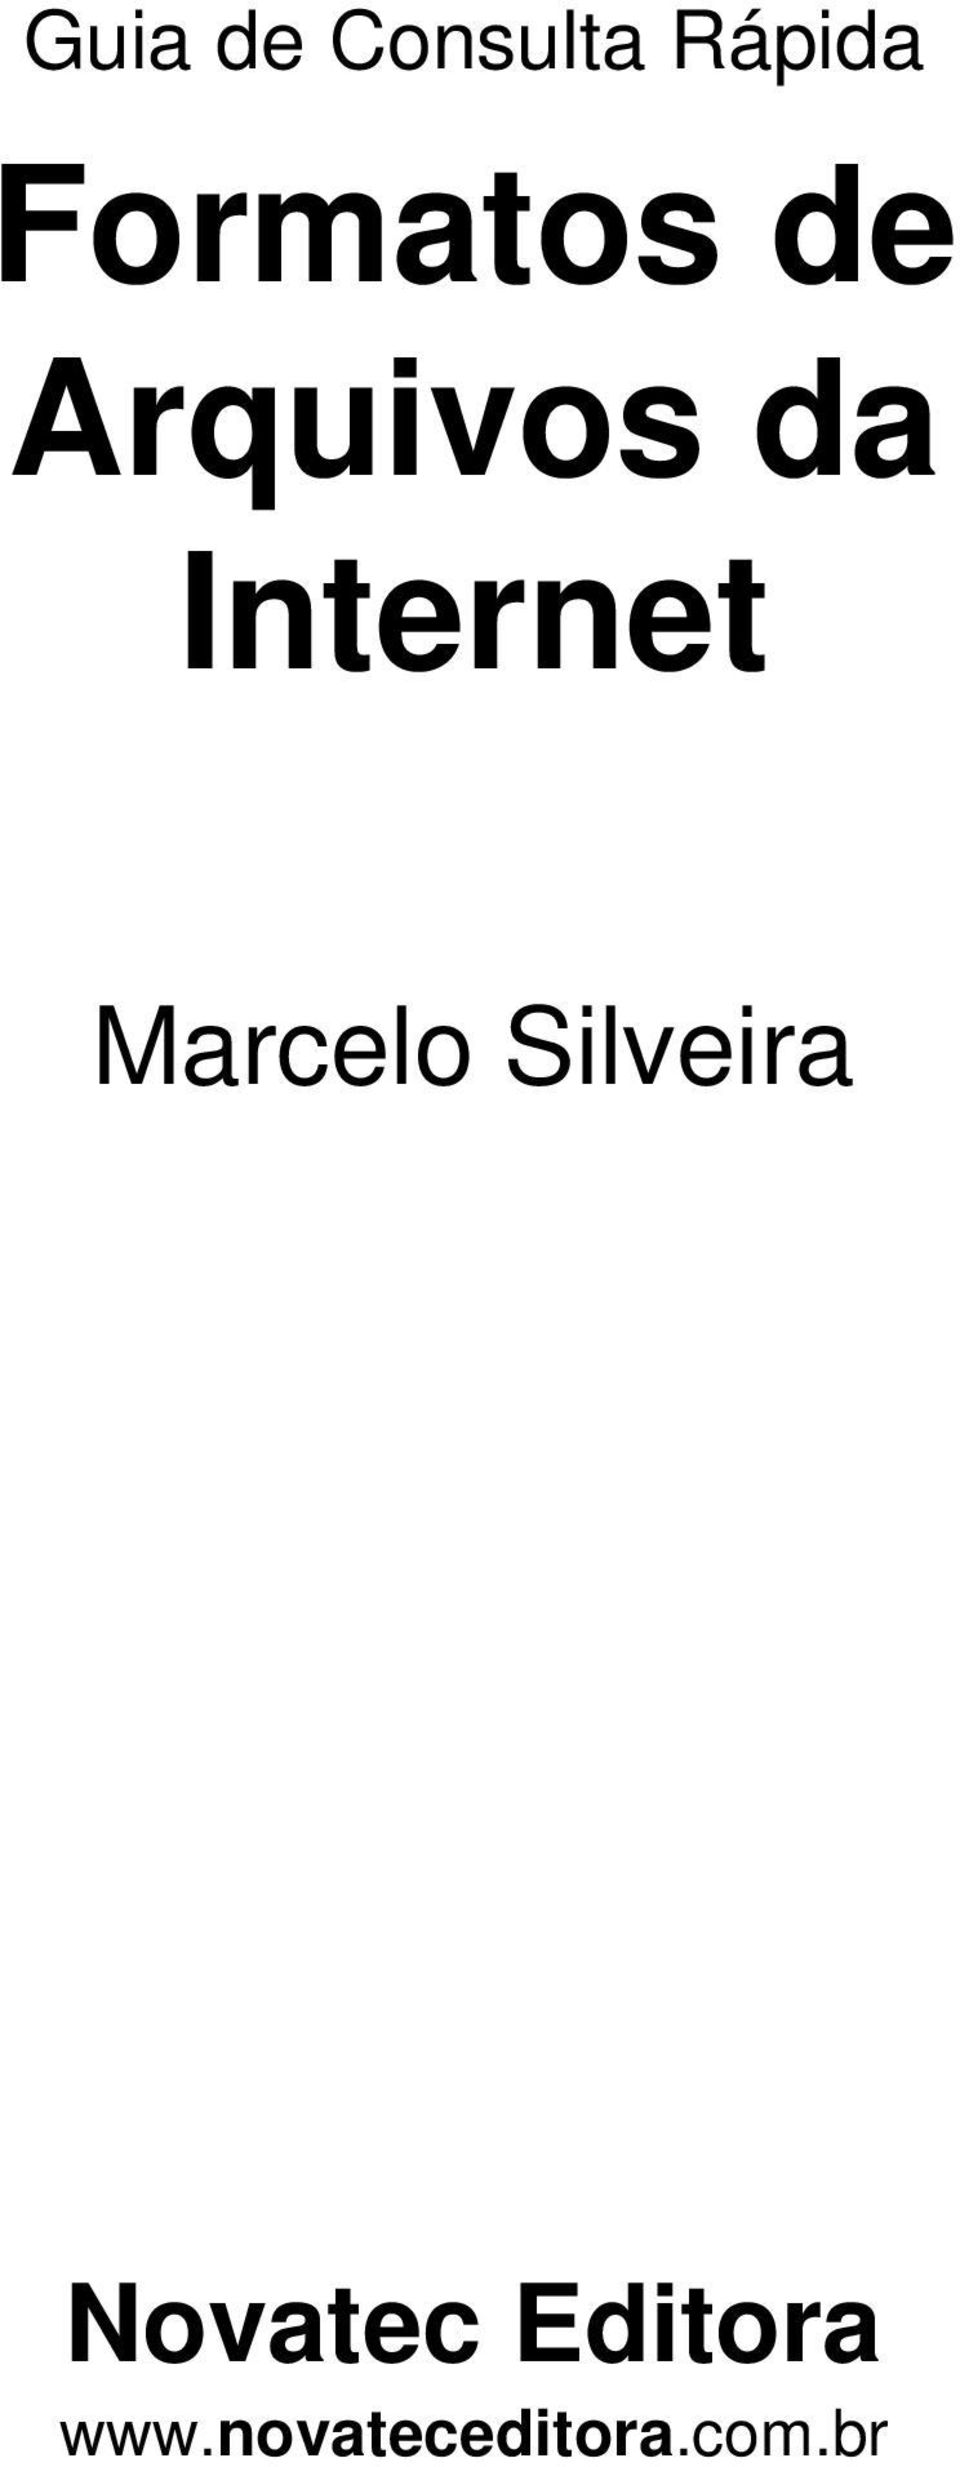 Internet Marcelo Silveira